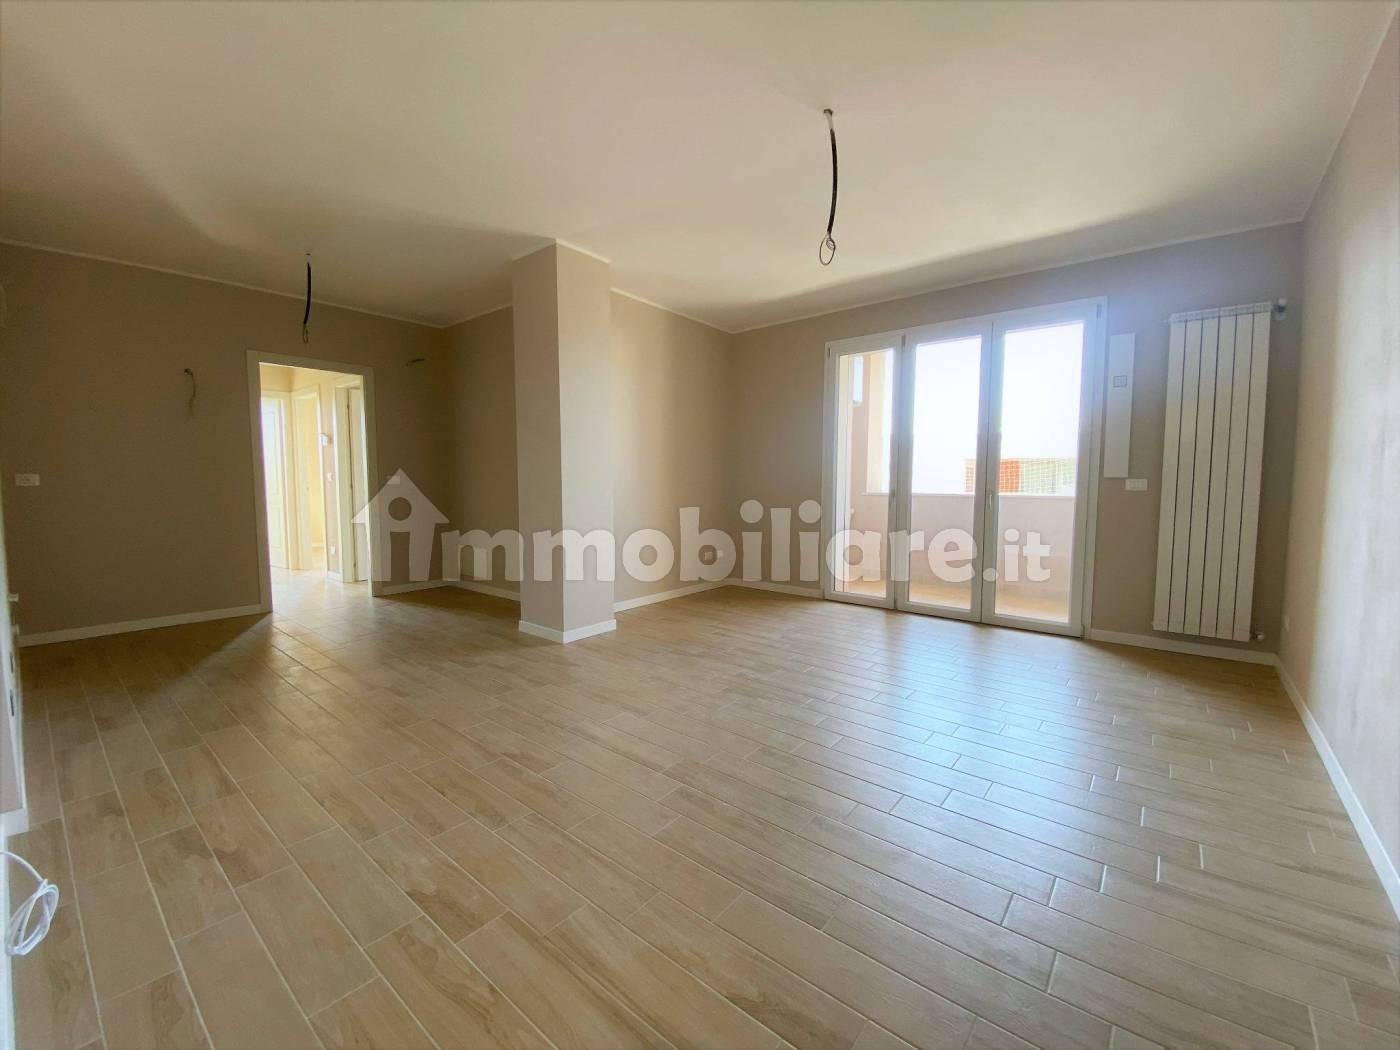 Appartamento in vendita a Pisa, 3 locali, prezzo € 235.000 | PortaleAgenzieImmobiliari.it